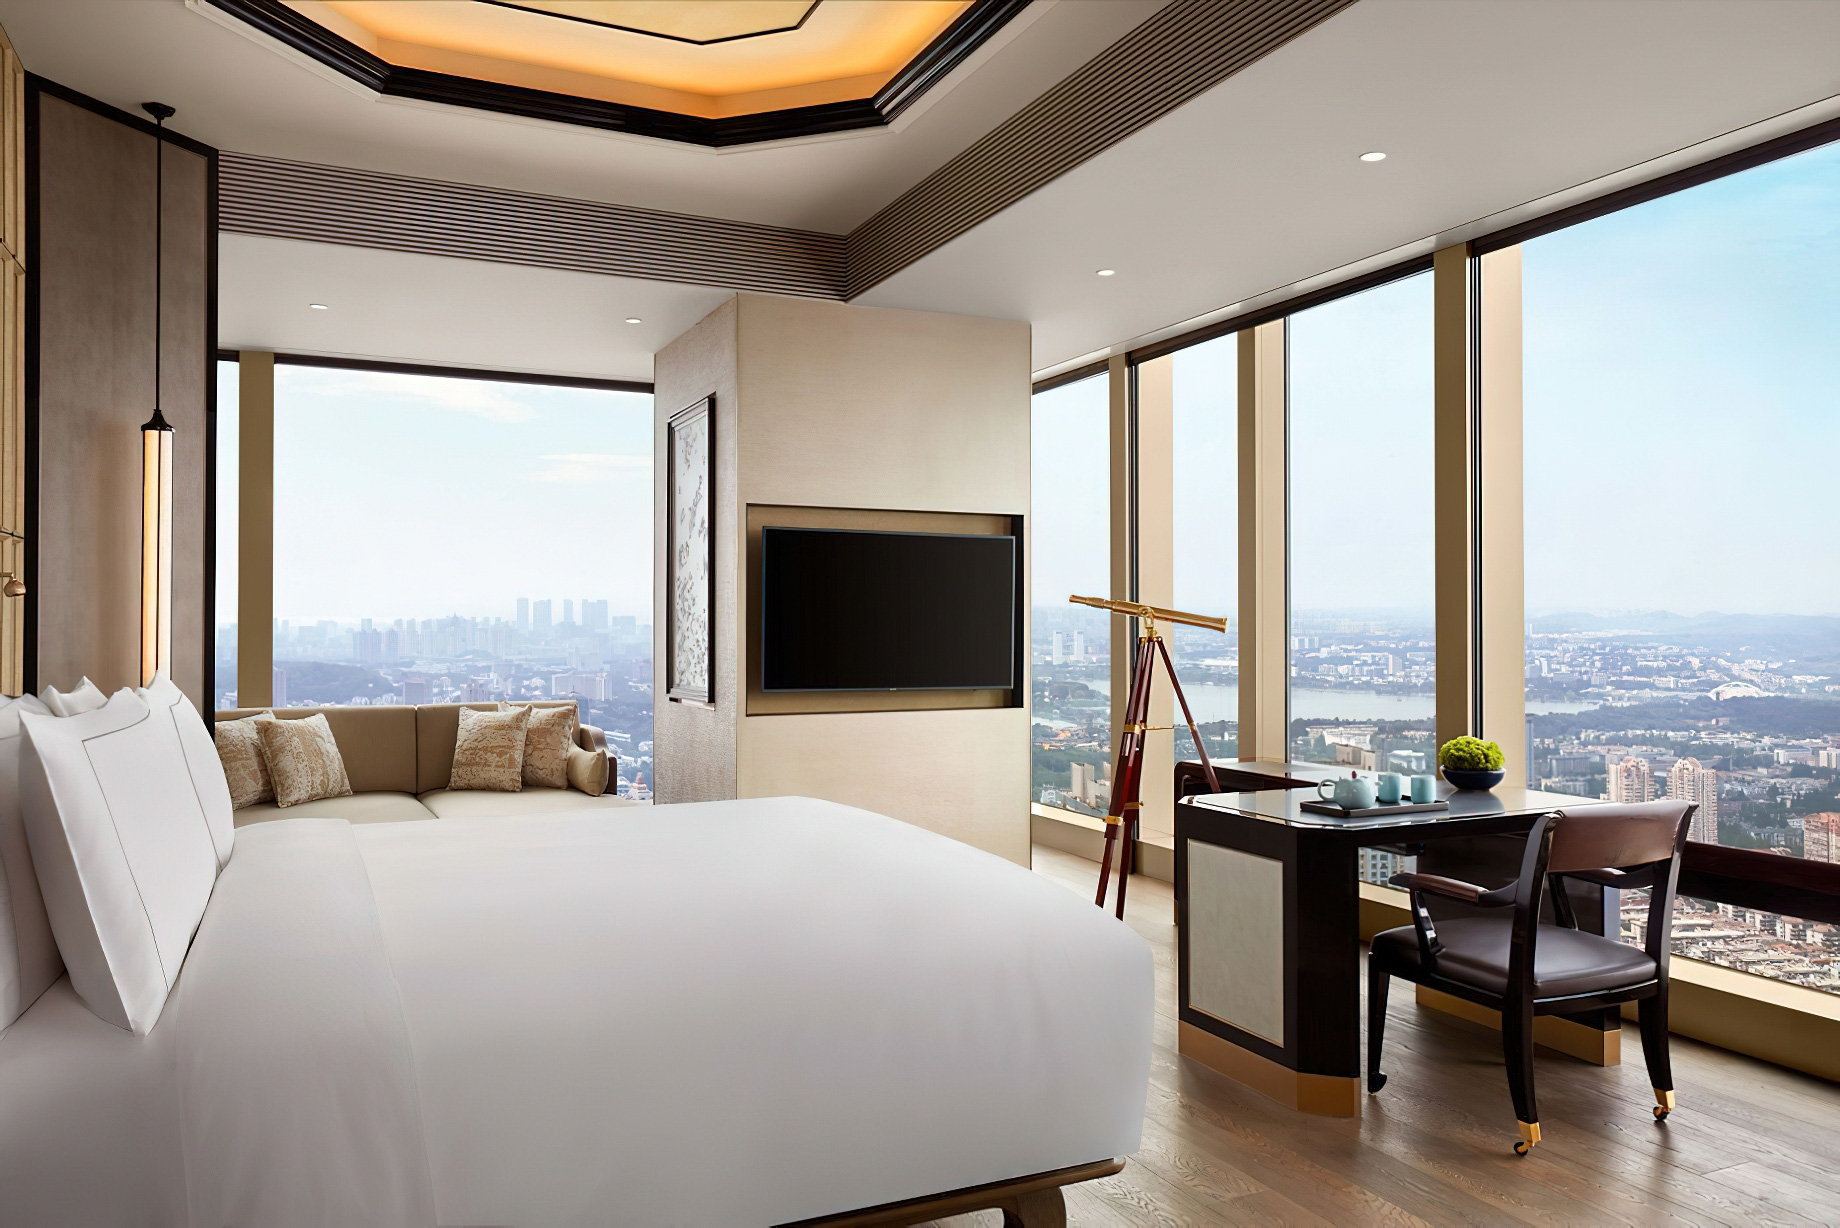 The Ritz-Carlton, Nanjing Hotel – Nanjing, China – Premier Room View